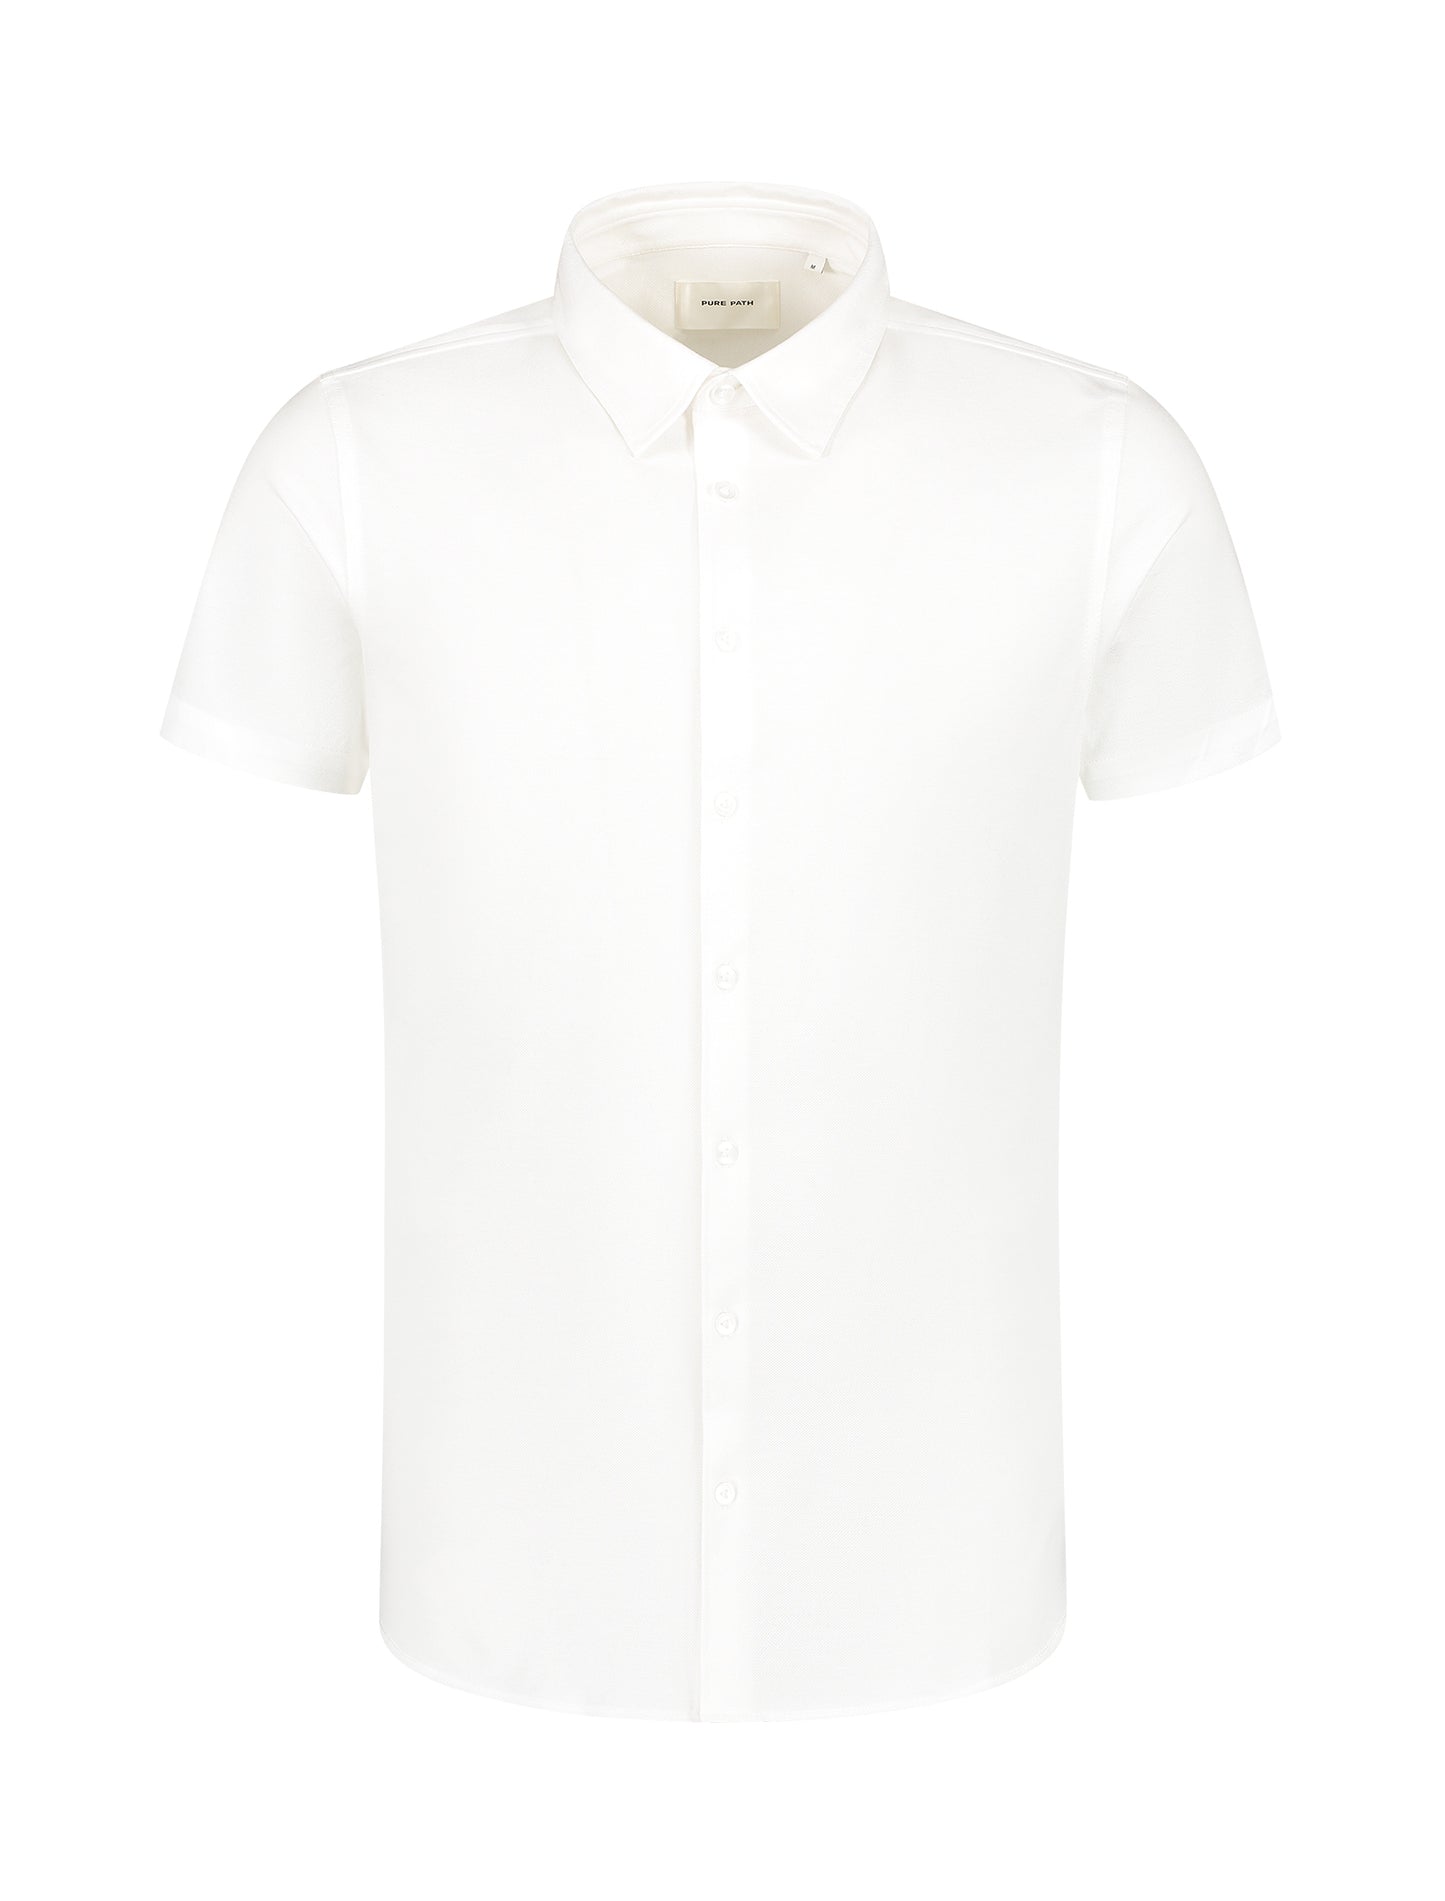 PURE PATH | Pique Shortsleeve Shirt - White